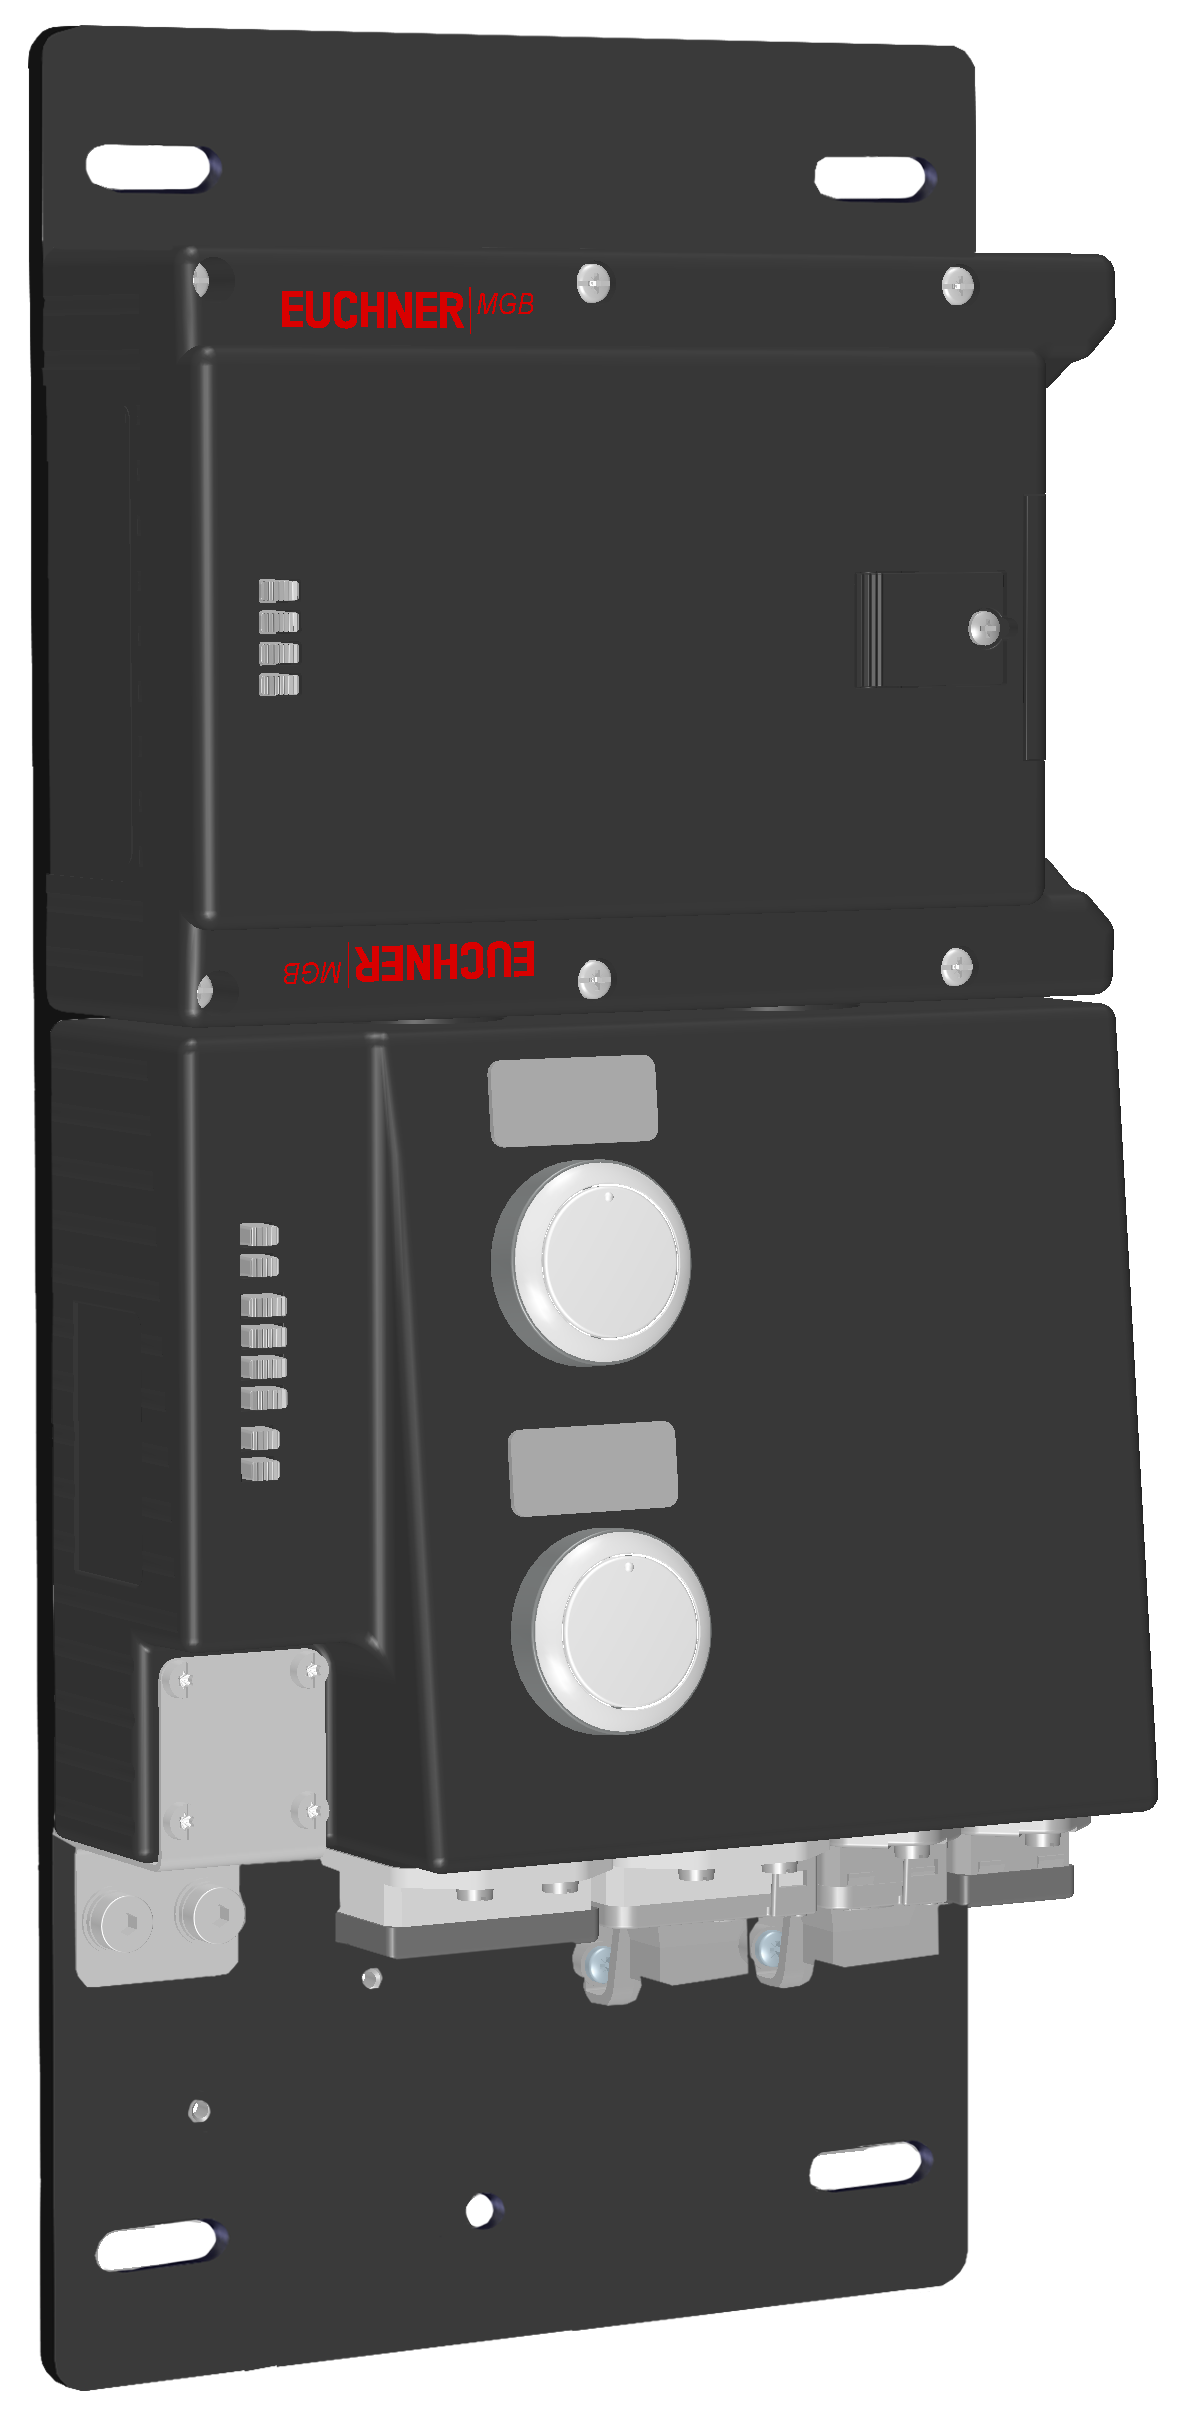 Vyhodnocovací moduly s jištěním ochranného krytu MGB-L1B-PNA-R-121831  (Obj. č. 121831)